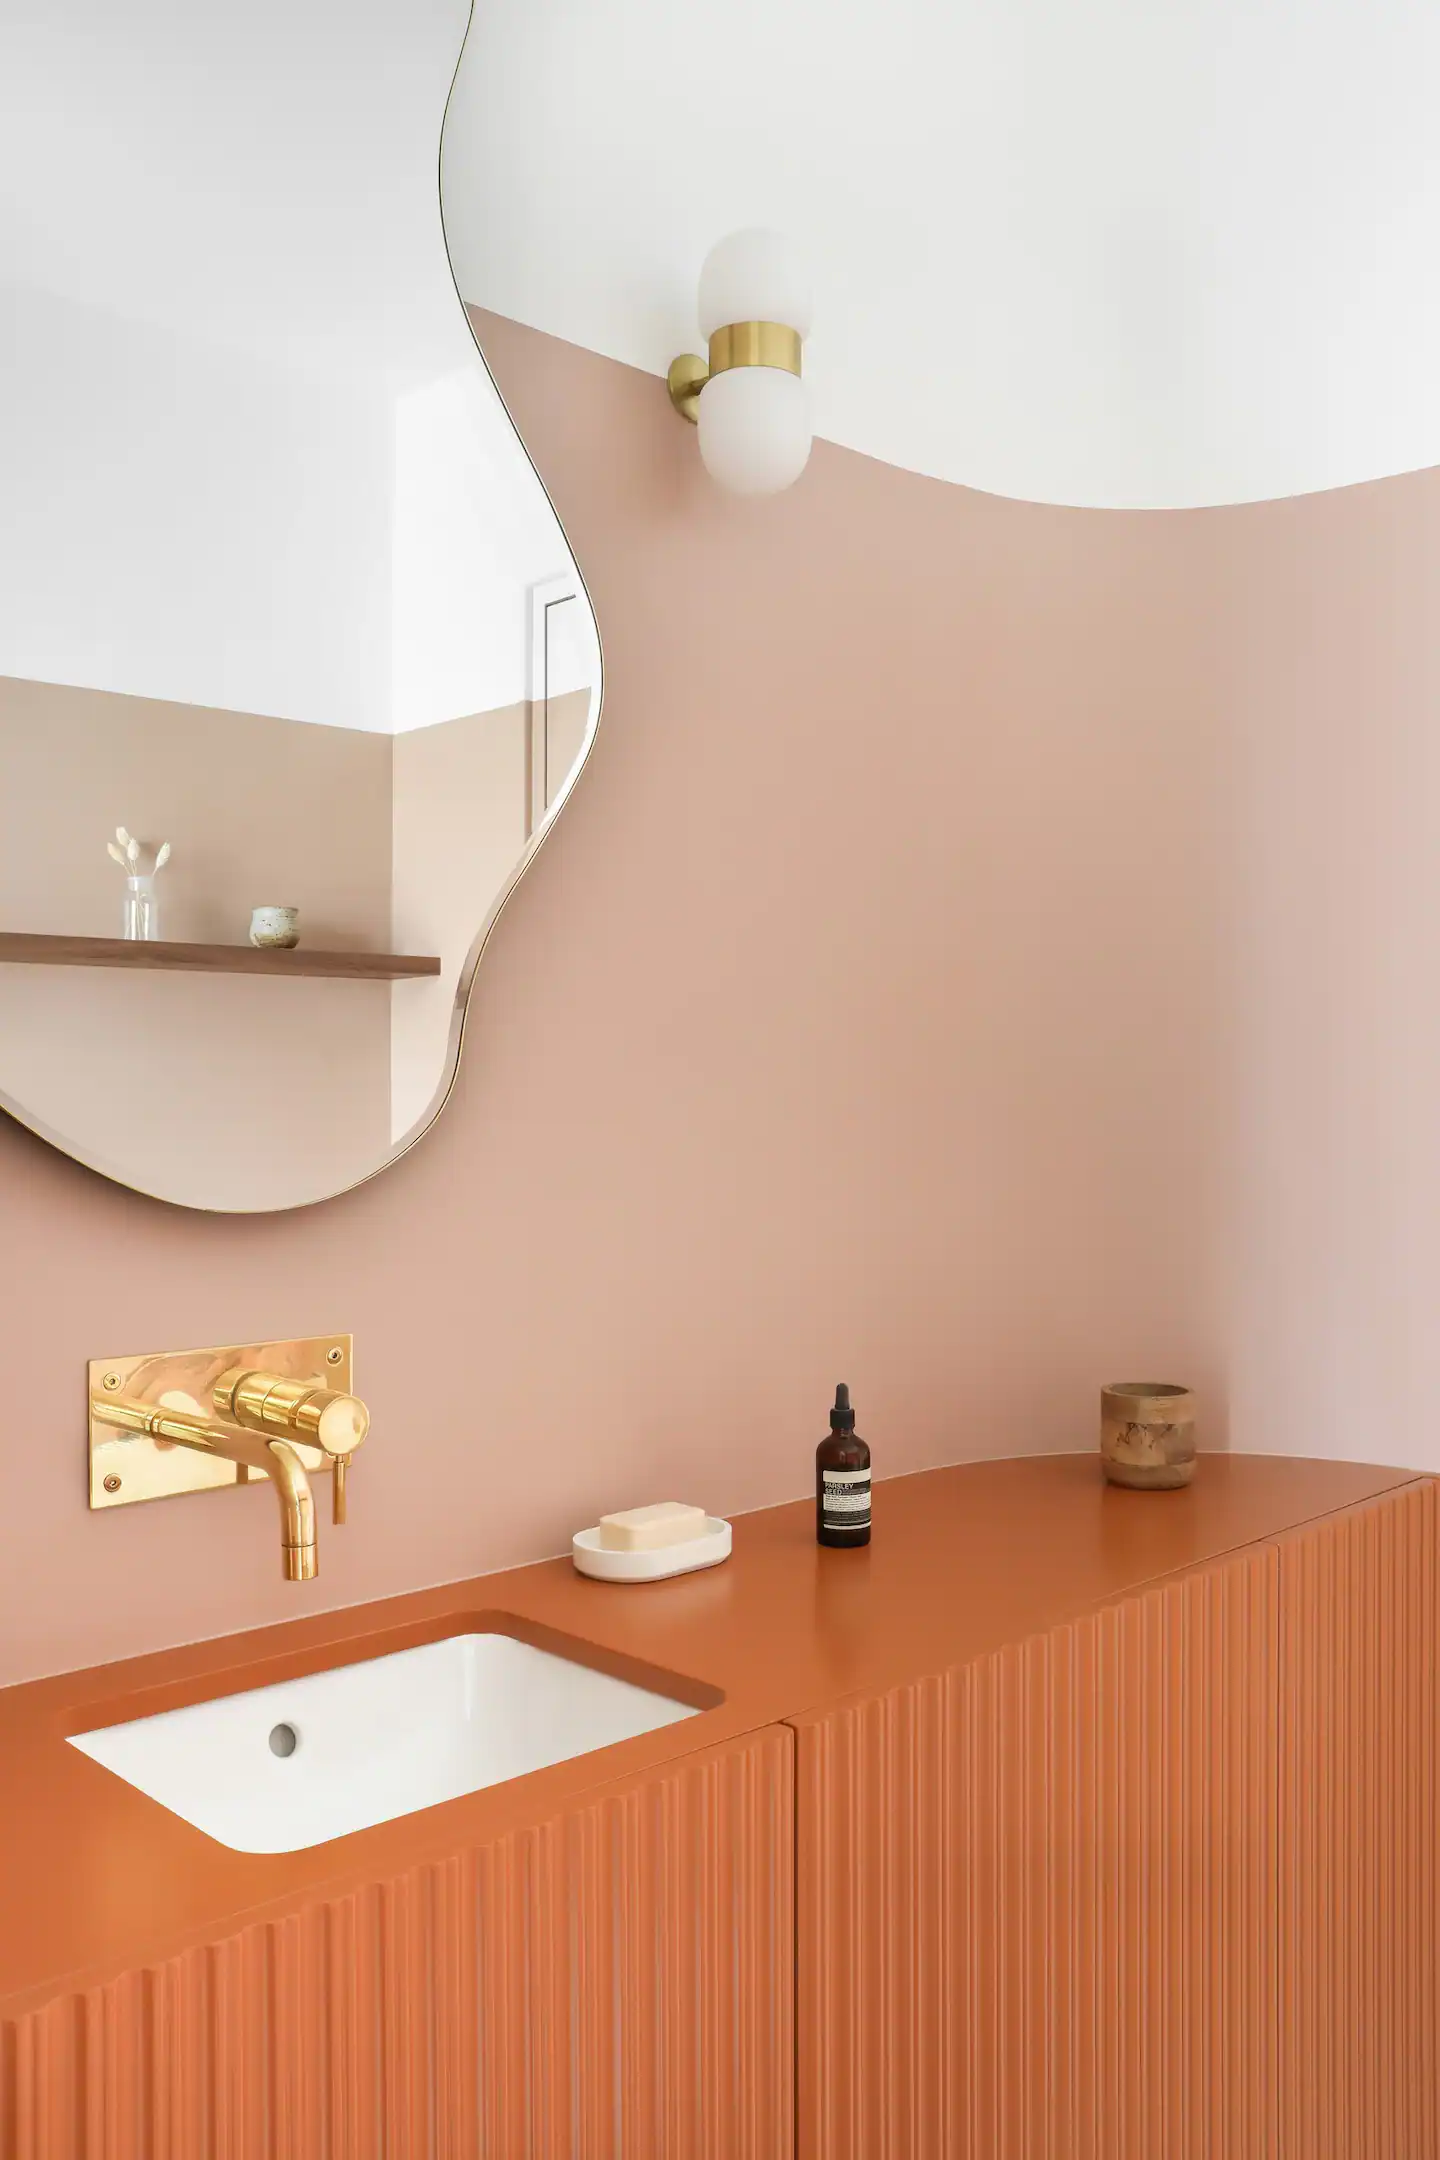 salle de bain terracotta appartement 45m2 Paris décoration design à louer Airbnb par Heju